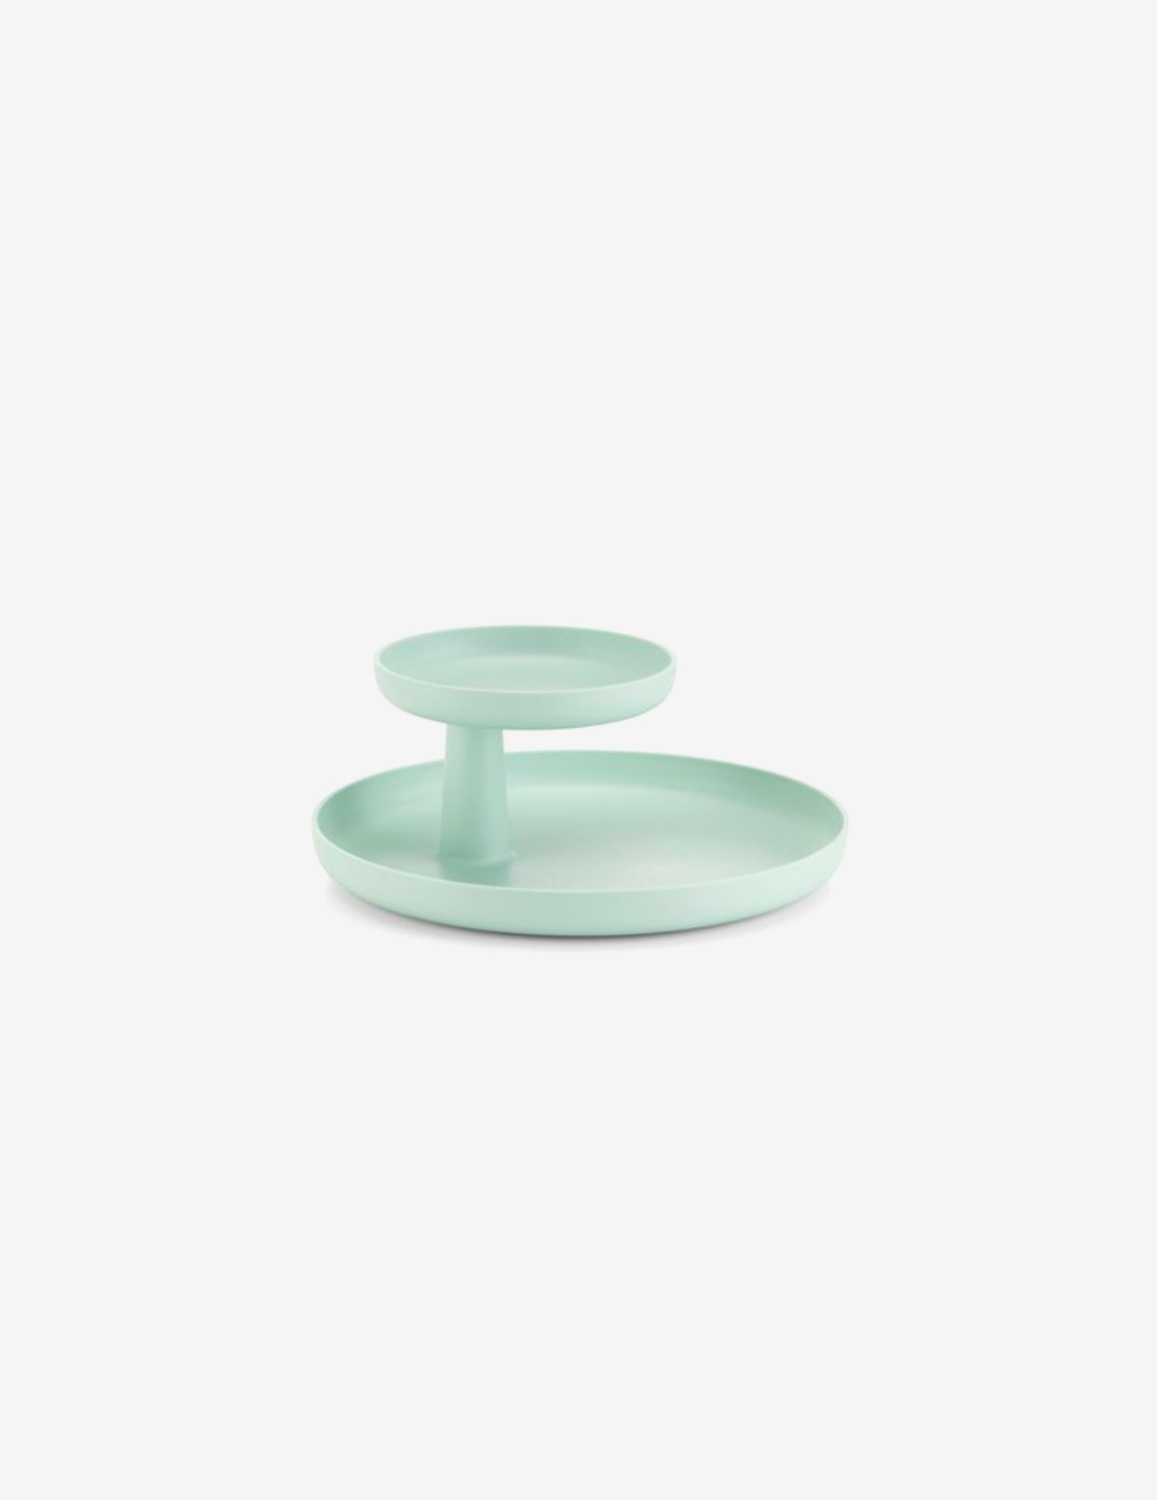 [Vitra] Rotary Tray / mint green